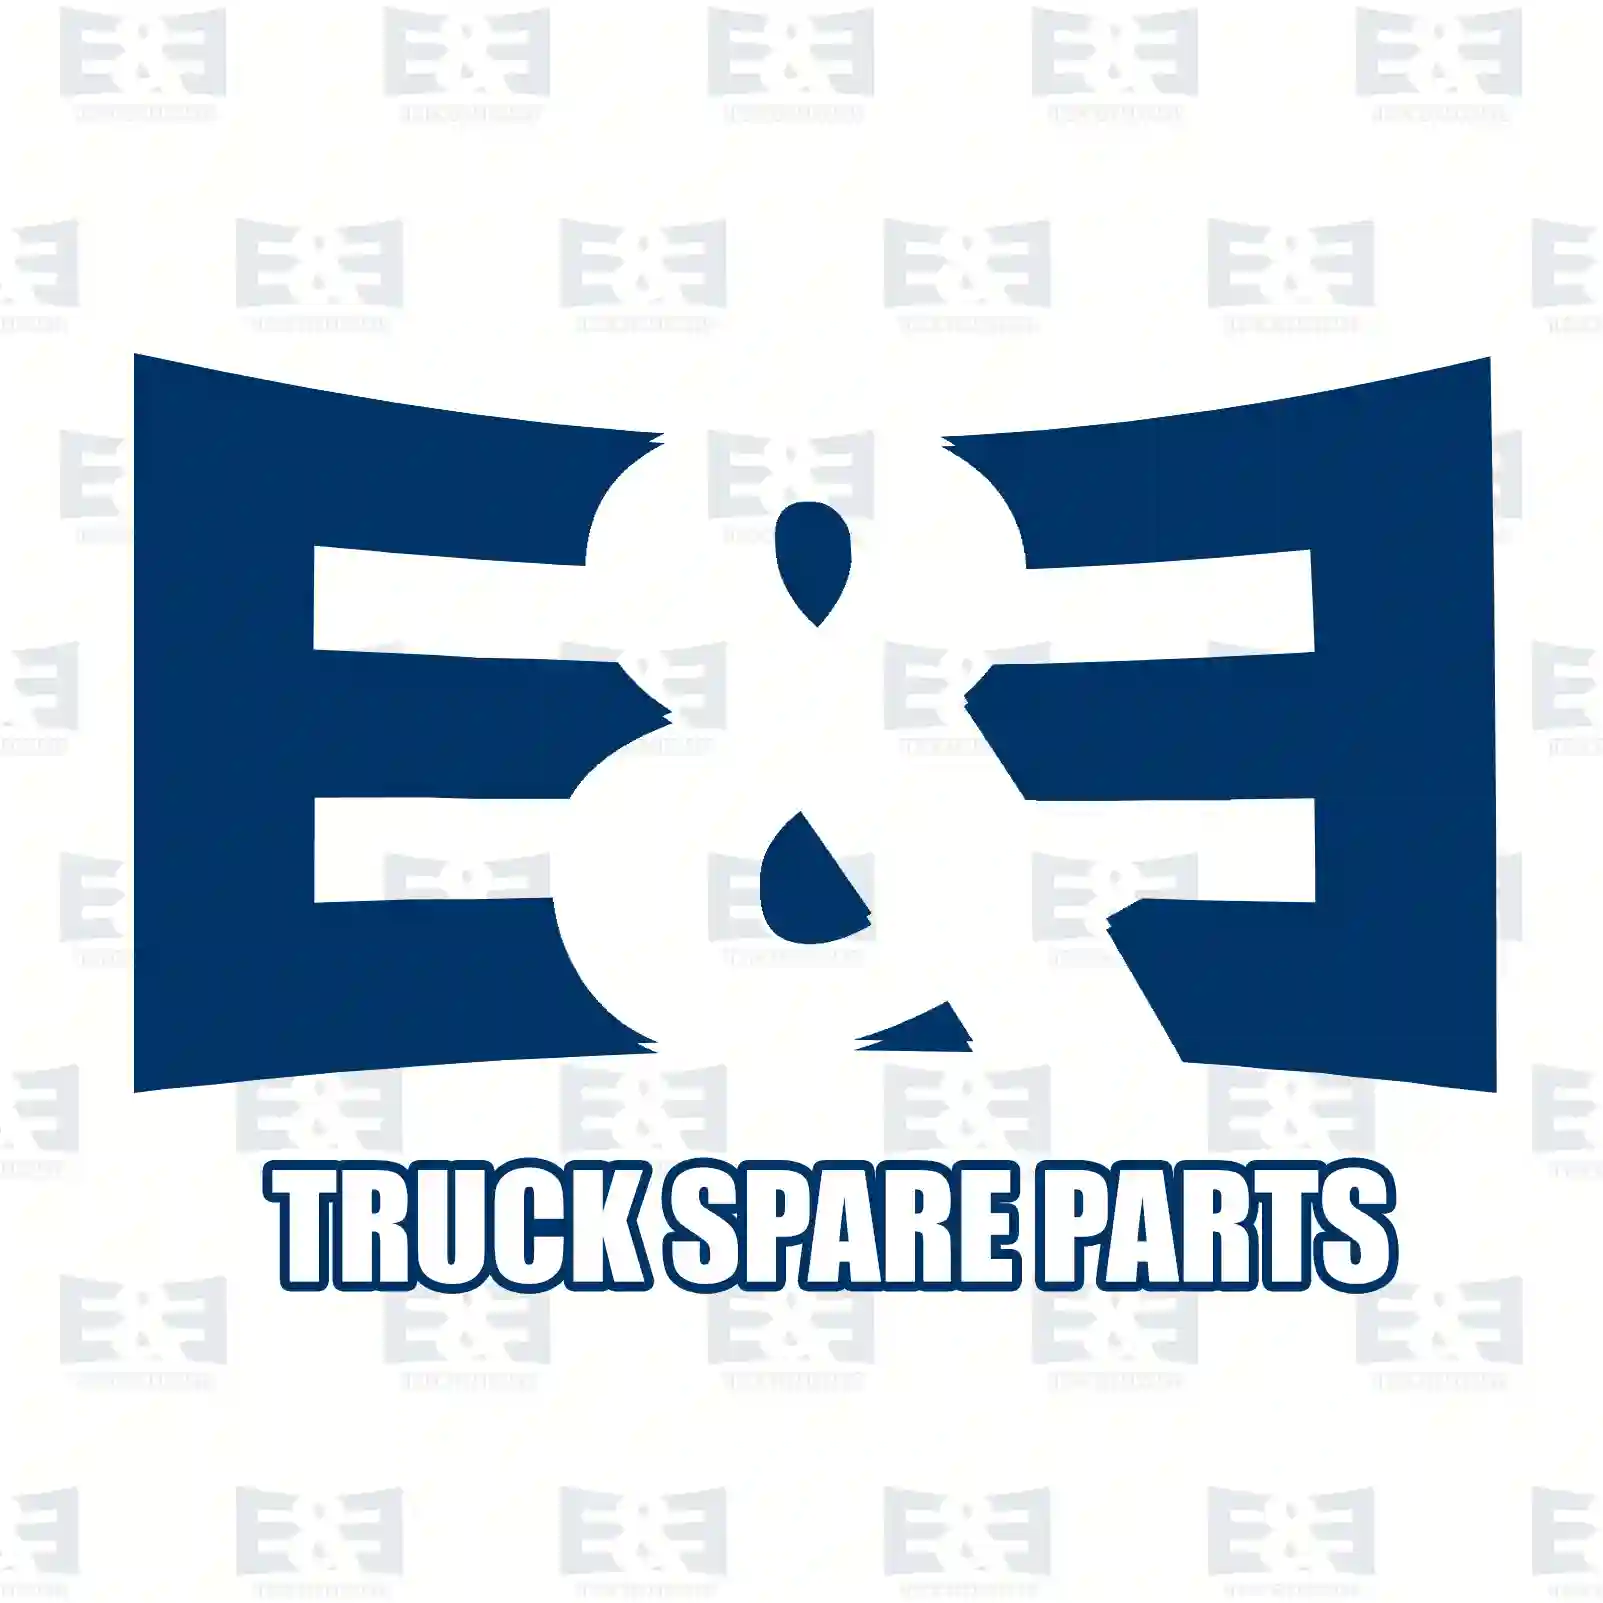 Propeller shaft, 2E2276875, 7401067717, 10677 ||  2E2276875 E&E Truck Spare Parts | Truck Spare Parts, Auotomotive Spare Parts Propeller shaft, 2E2276875, 7401067717, 10677 ||  2E2276875 E&E Truck Spare Parts | Truck Spare Parts, Auotomotive Spare Parts